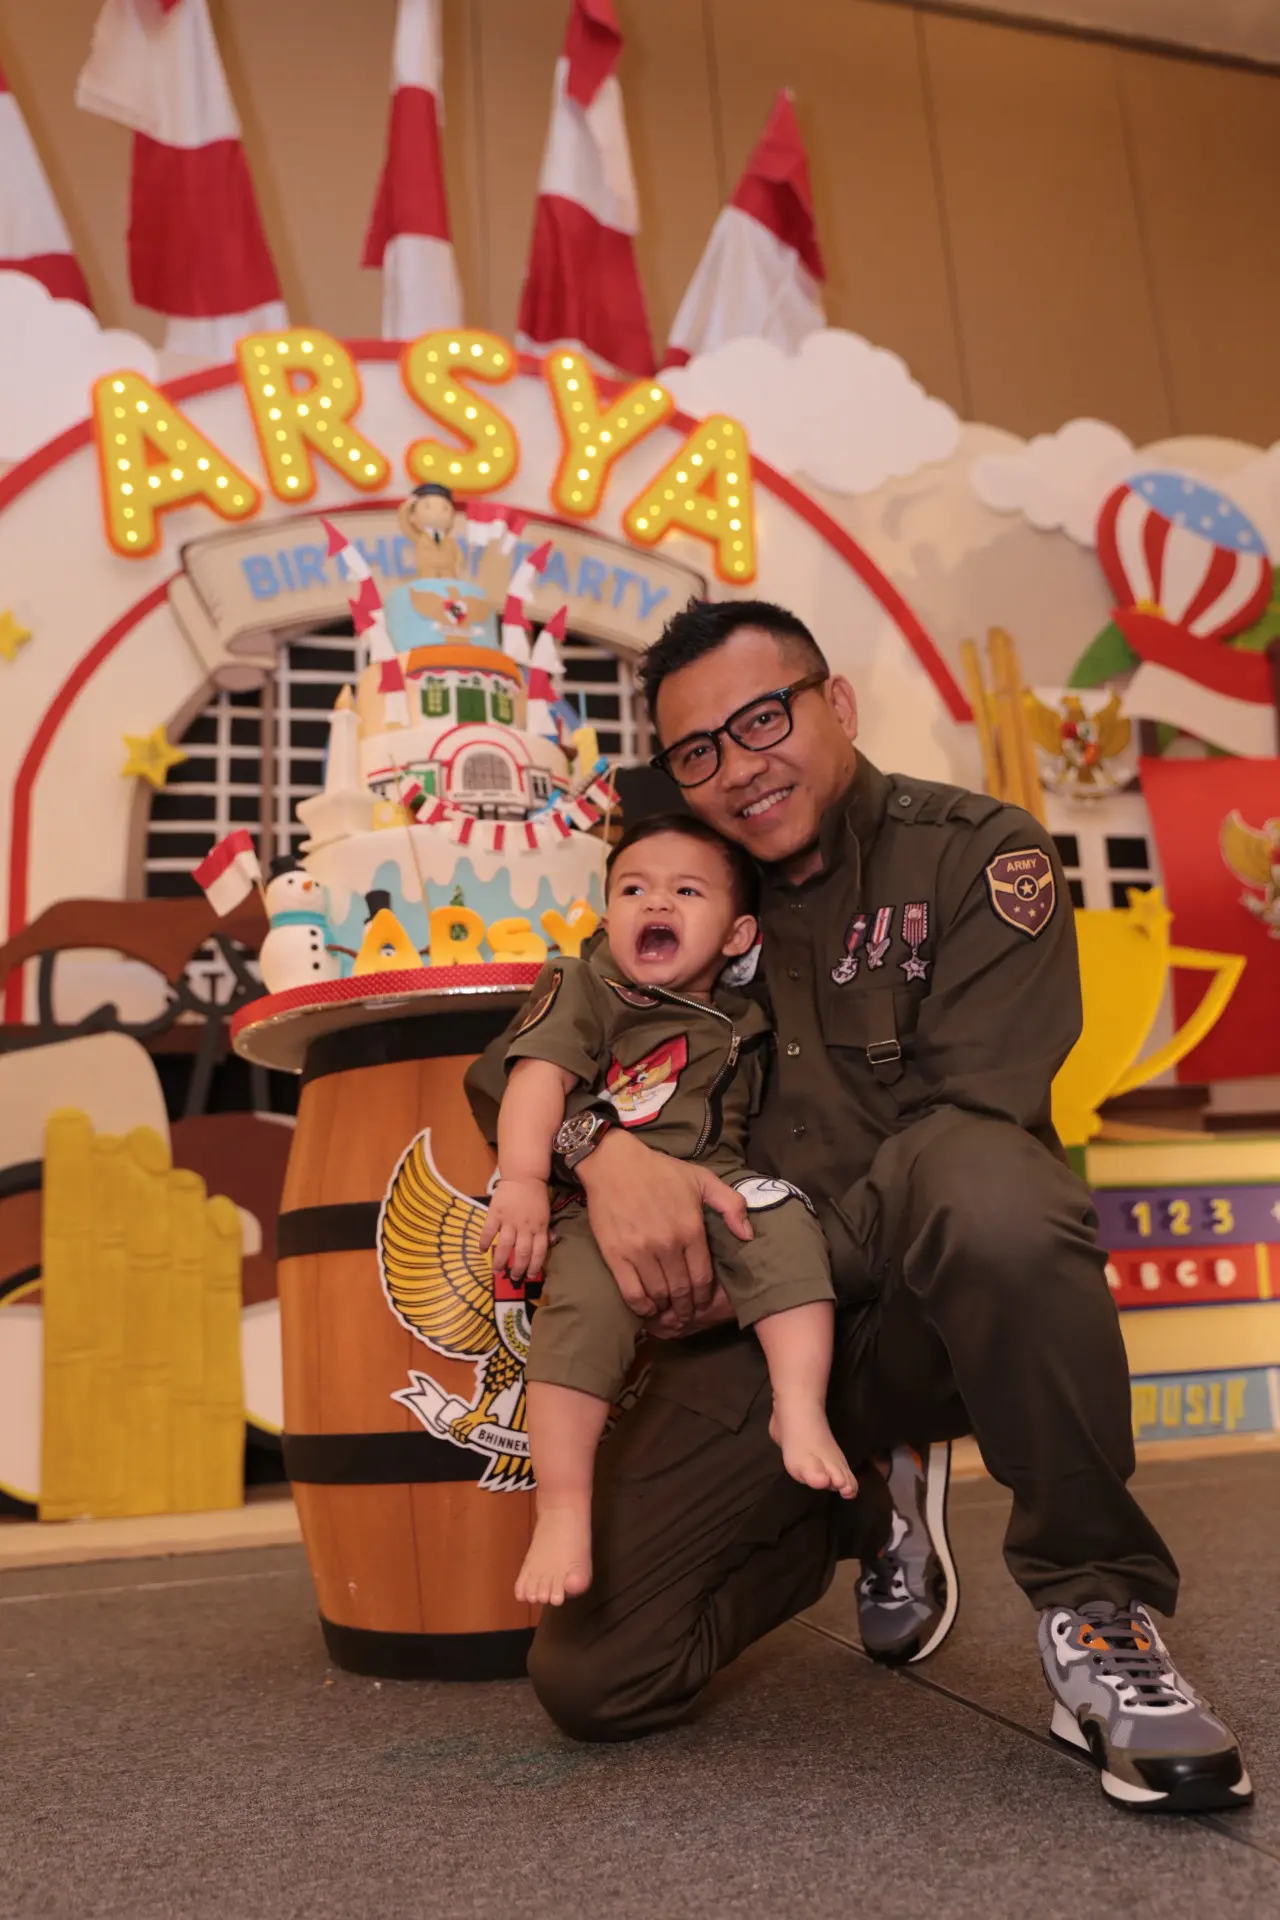 Sebagai ayah, Anang berharap perayaan ulang tahun pertama ini akan terus menjadi kenangan bagi Arsya. Selain itu, Anang ingin anak laki-lakinya itu selalu memiliki jiwa nasionalisme tinggi sampai kapanpun. (Adrian Putra/Bintang.com)